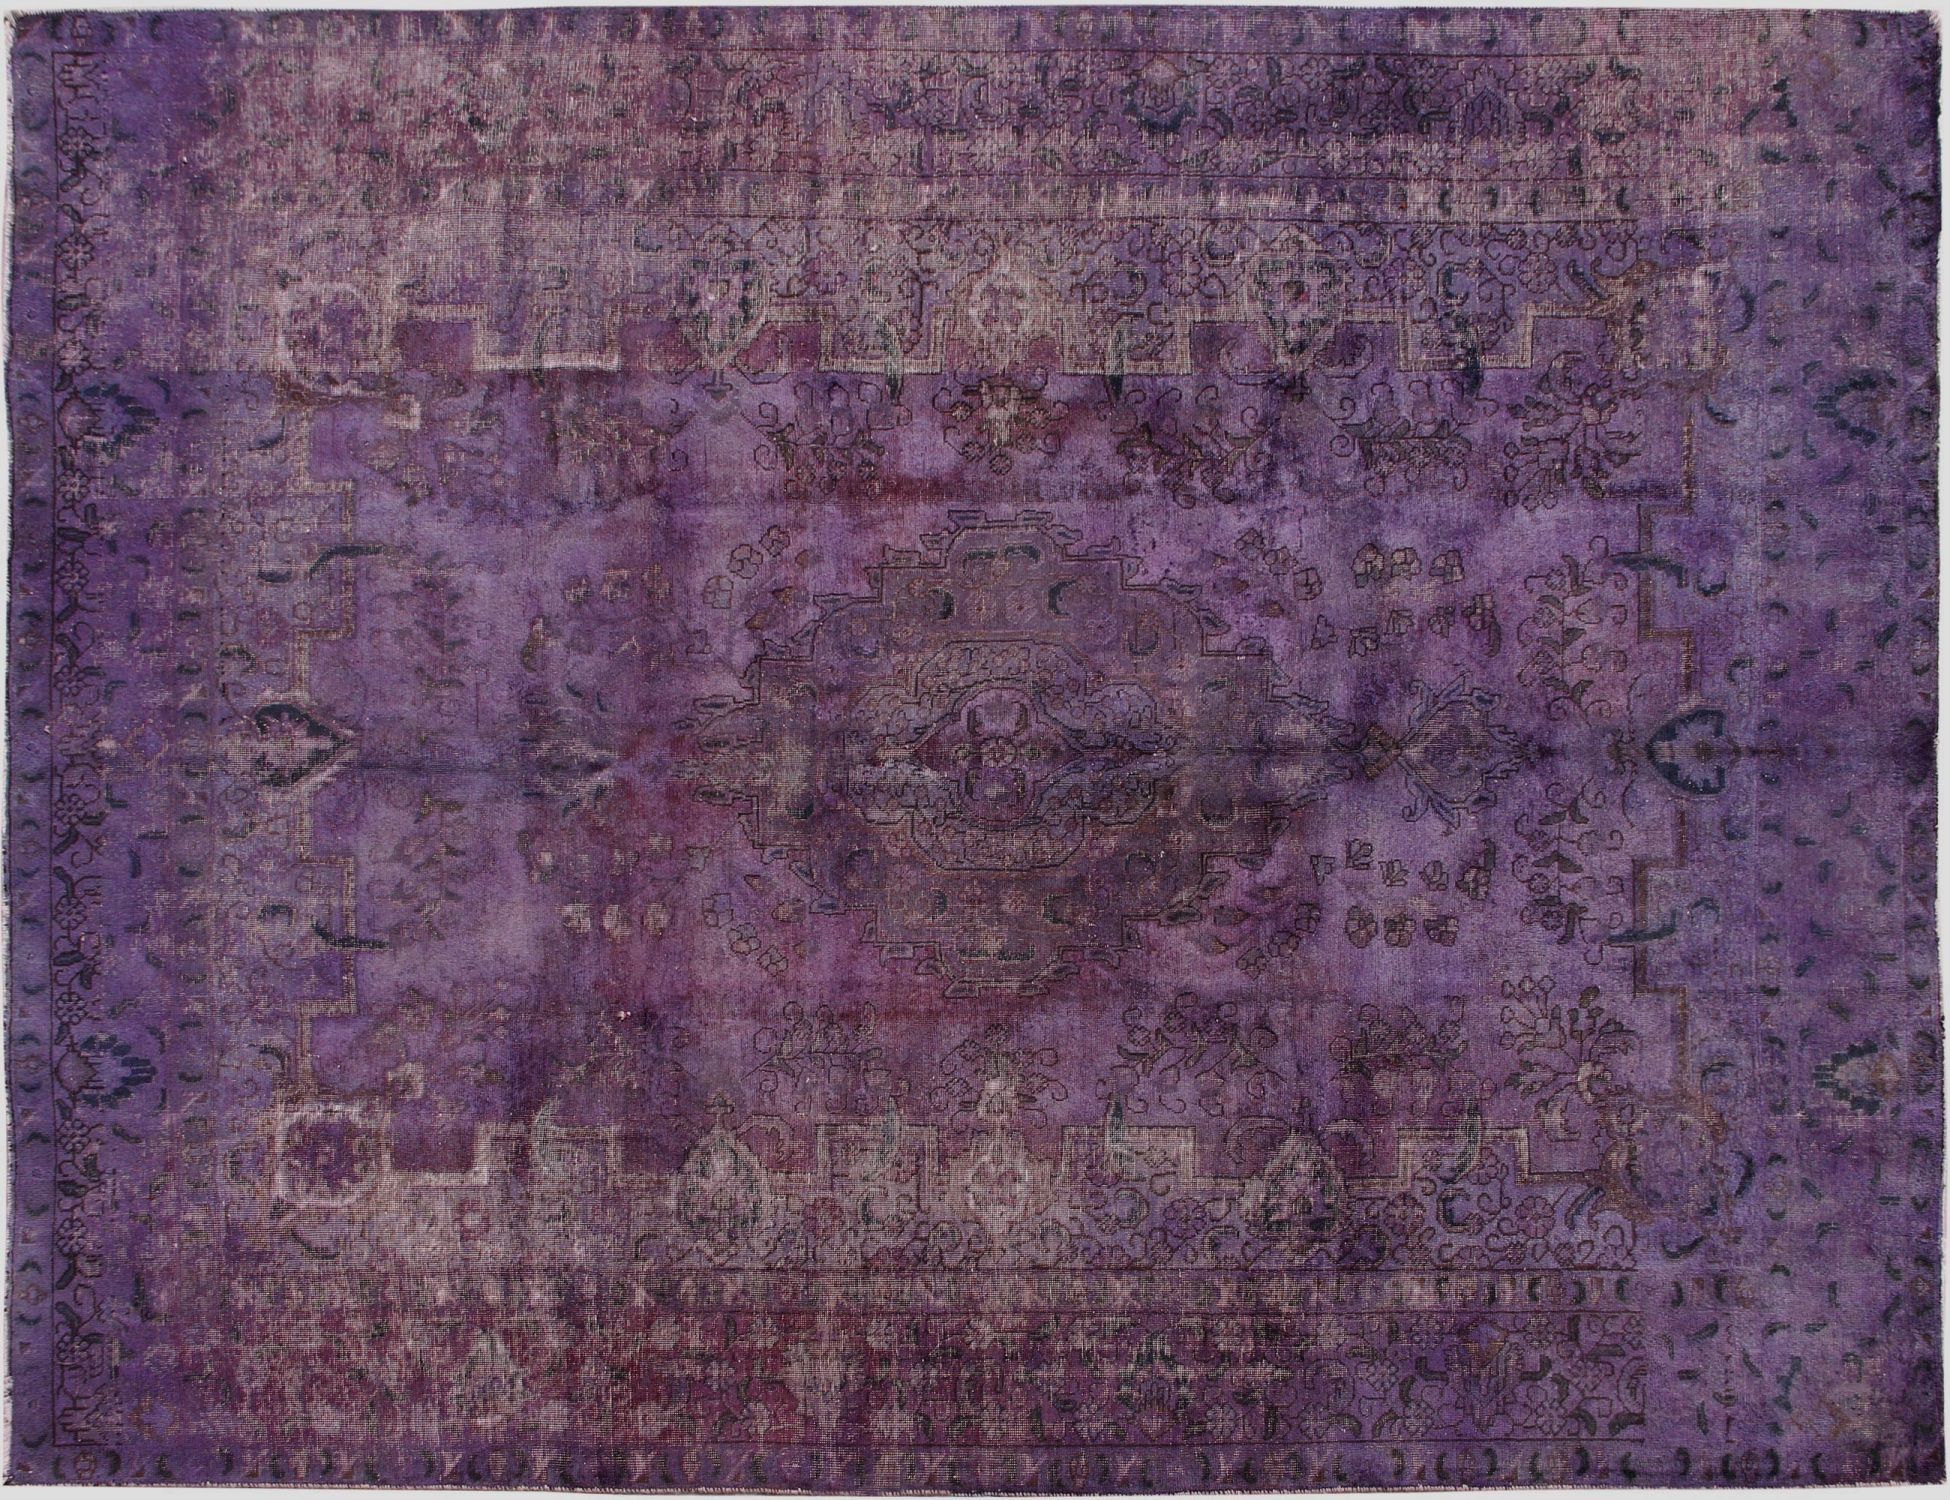 Persischer Vintage Teppich  lila <br/>385 x 280 cm